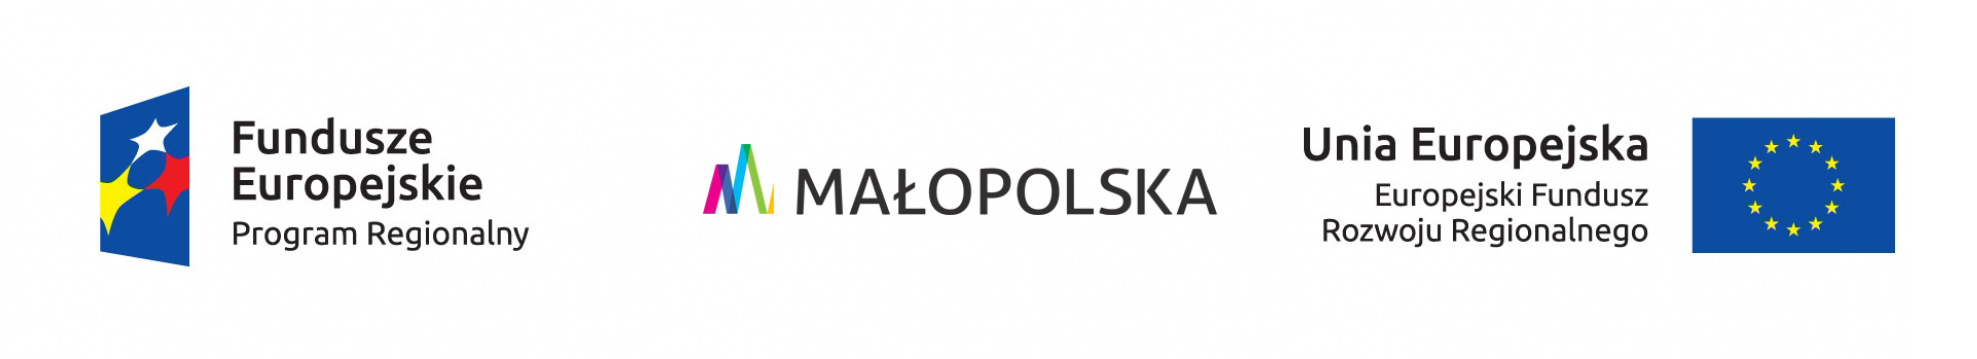 Logo Funduszy Europejskich, logo Małopolski, logo Unii Europejskiej